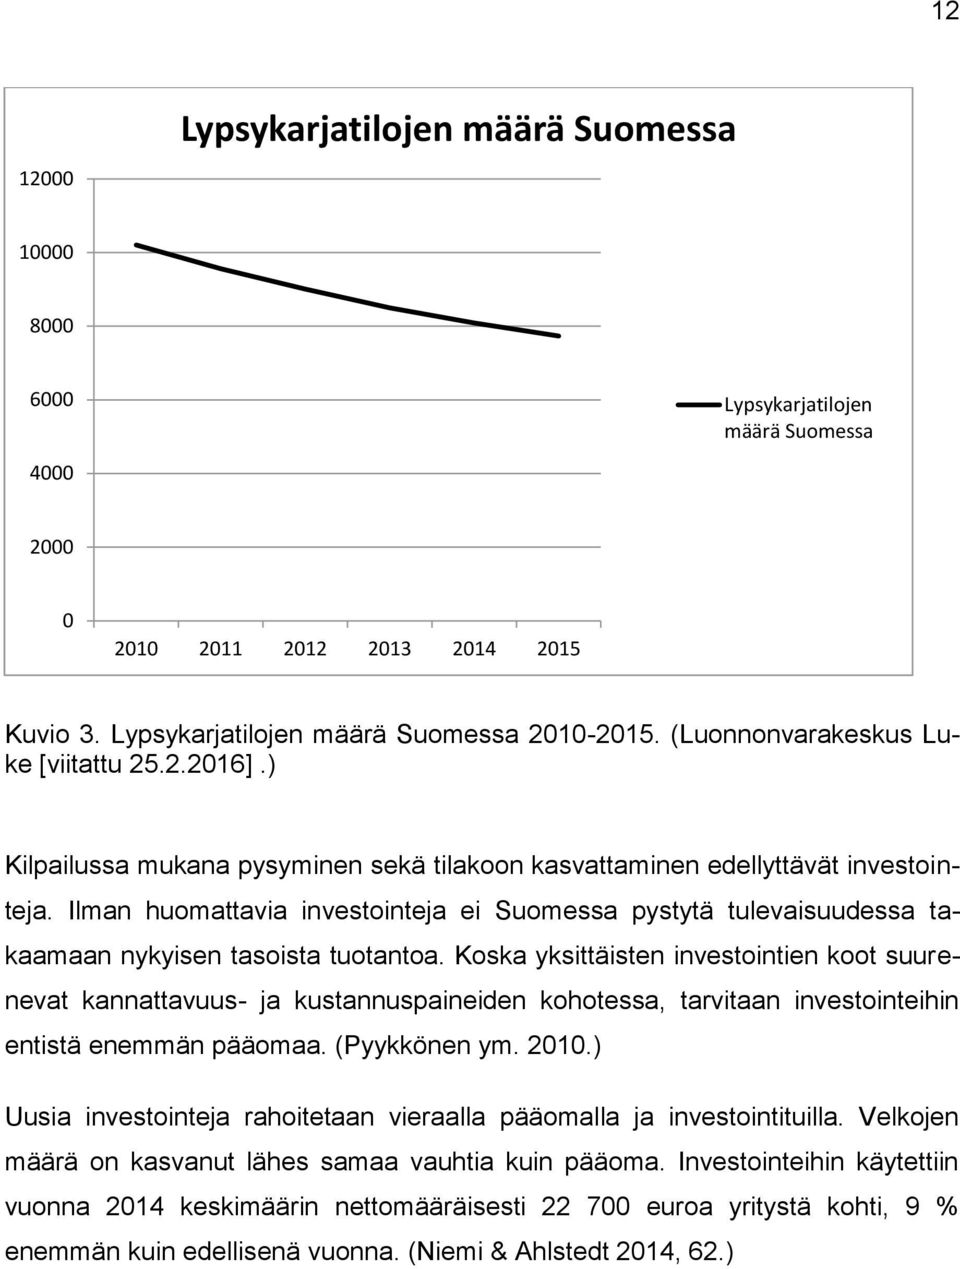 Ilman huomattavia investointeja ei Suomessa pystytä tulevaisuudessa takaamaan nykyisen tasoista tuotantoa.